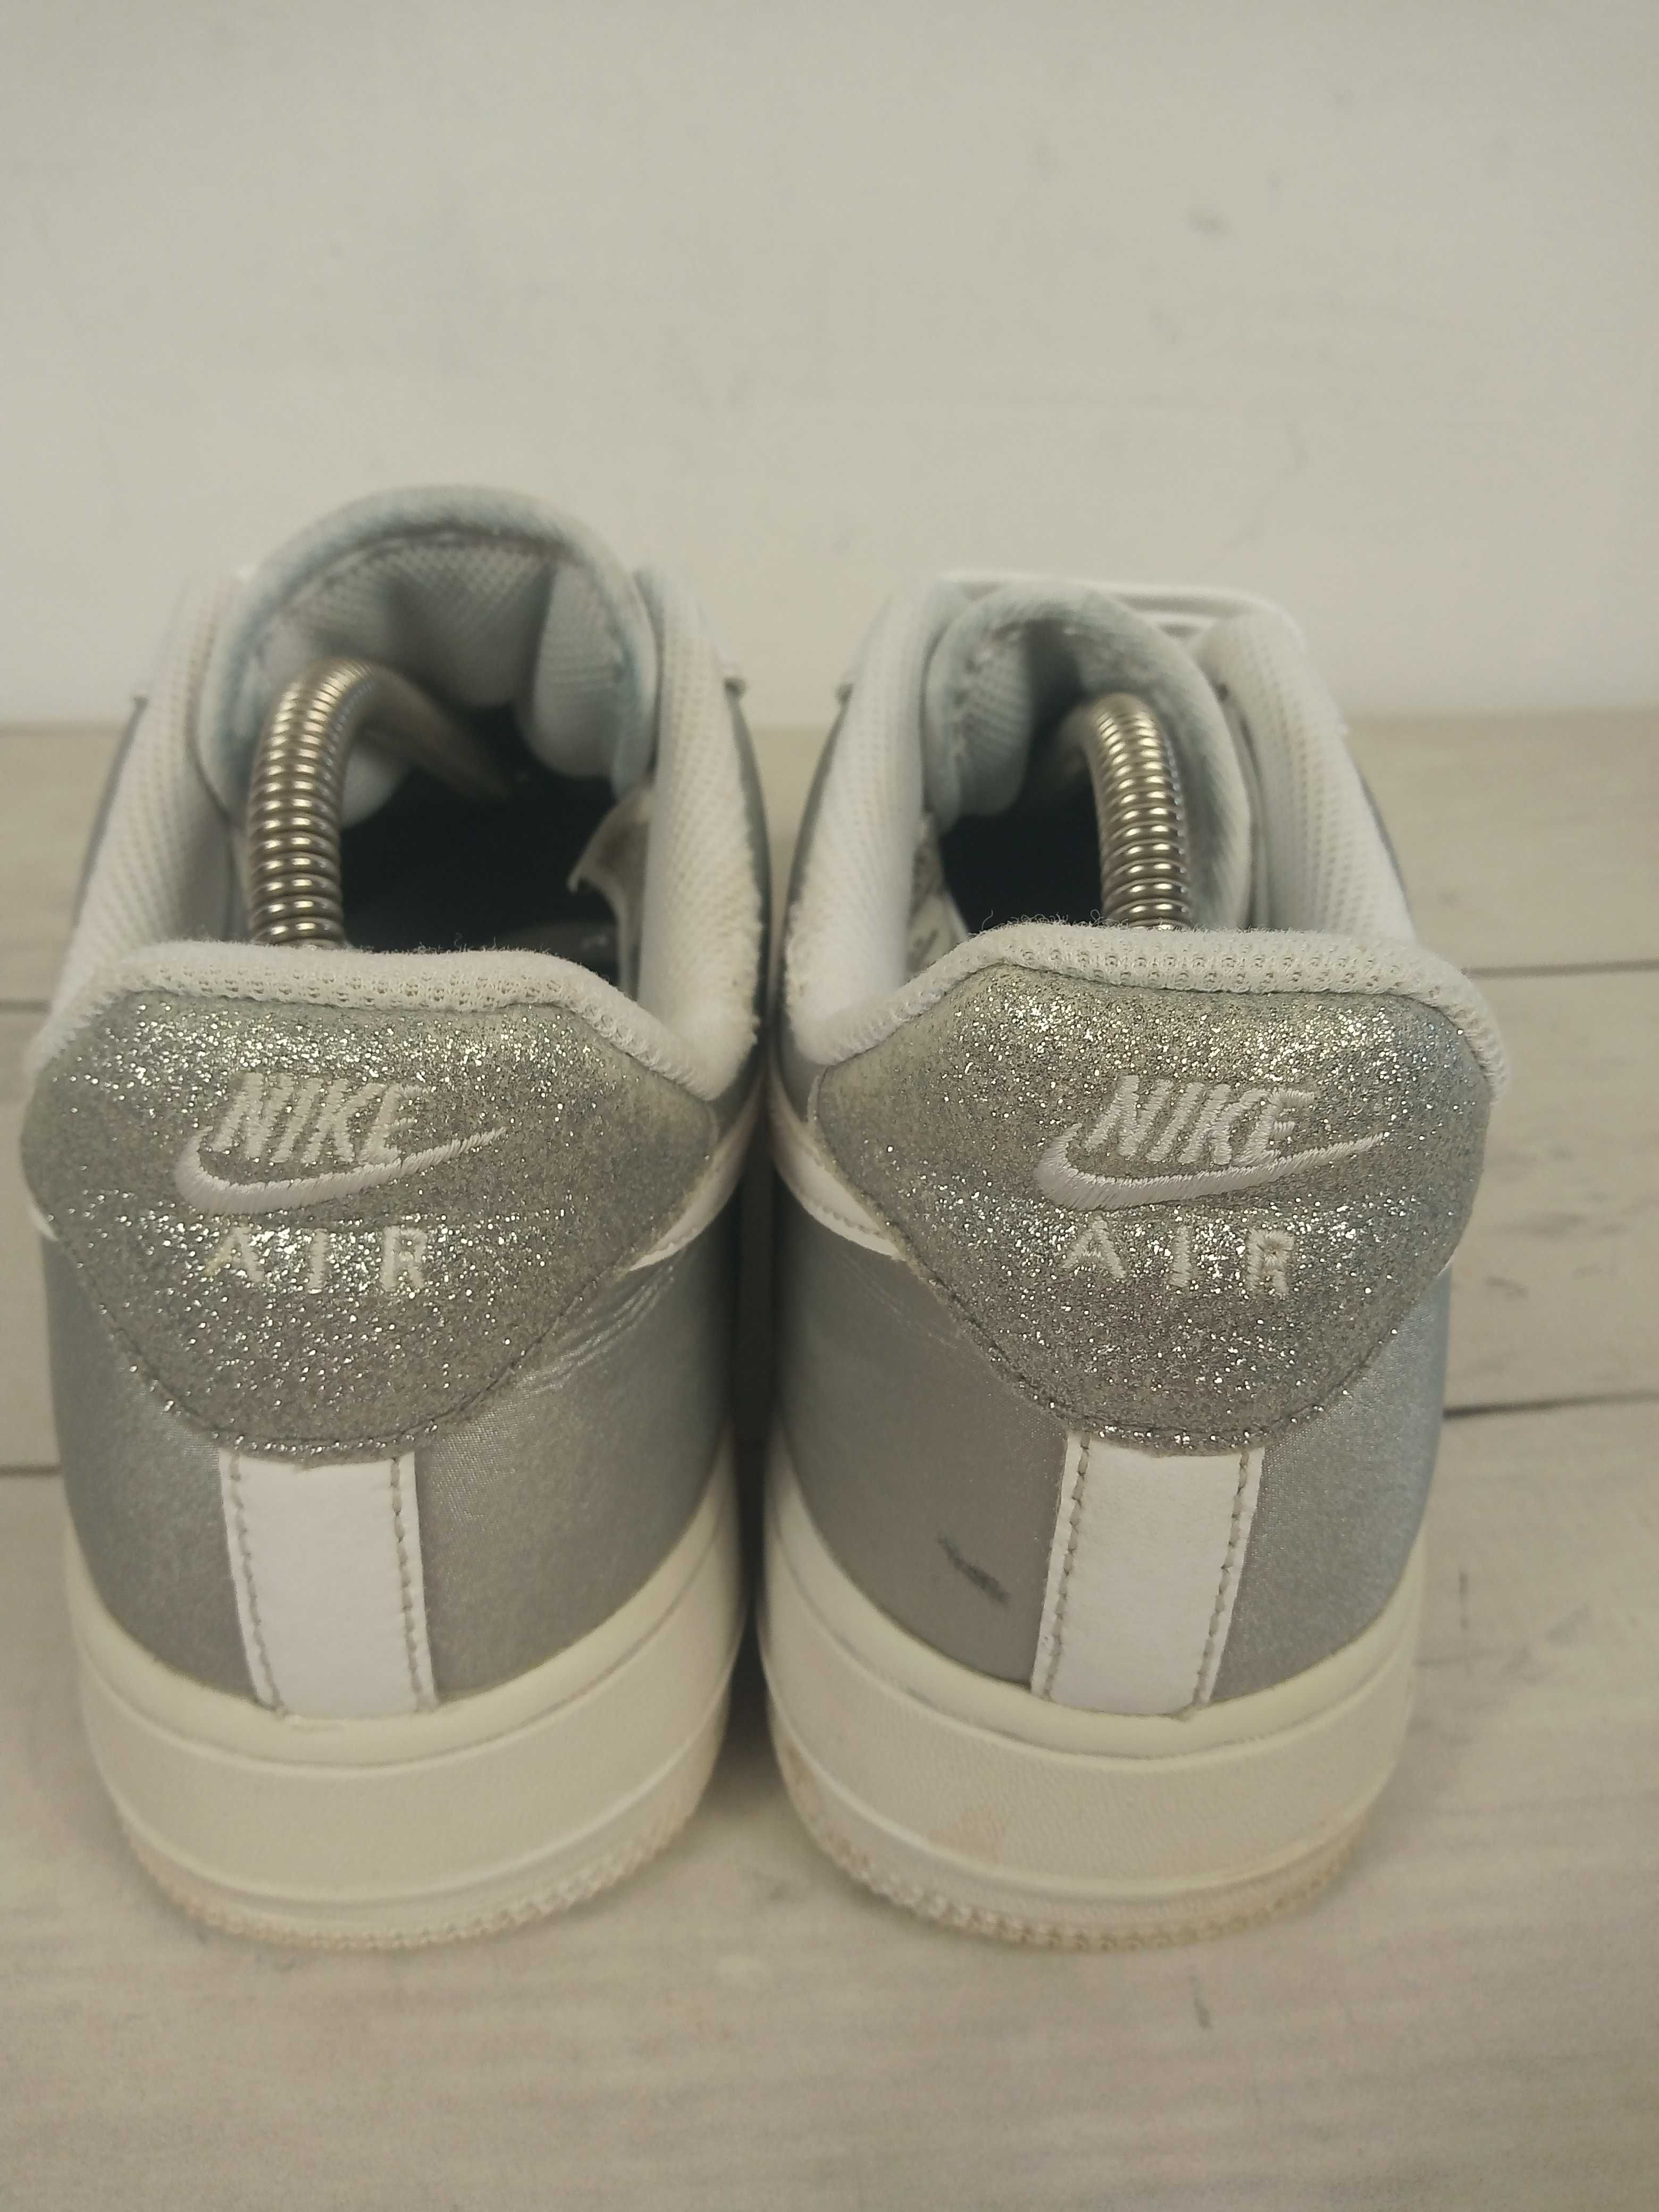 Nike Air Force 1 buty skórzane sneakersy 40